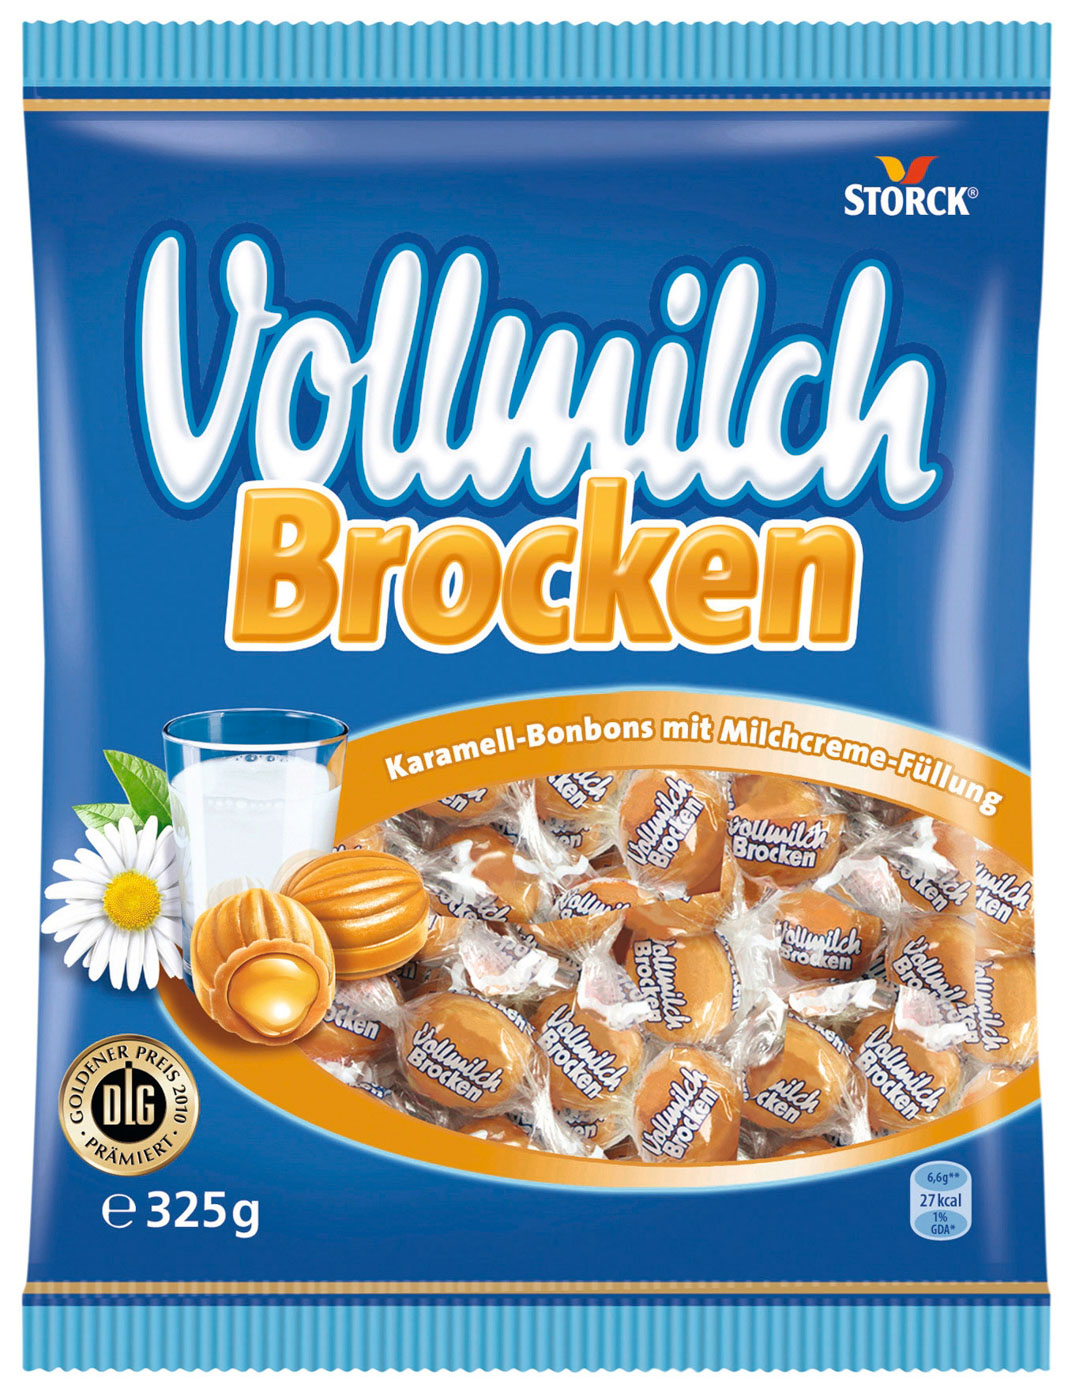 Storck Vollmilch Brocken 325G